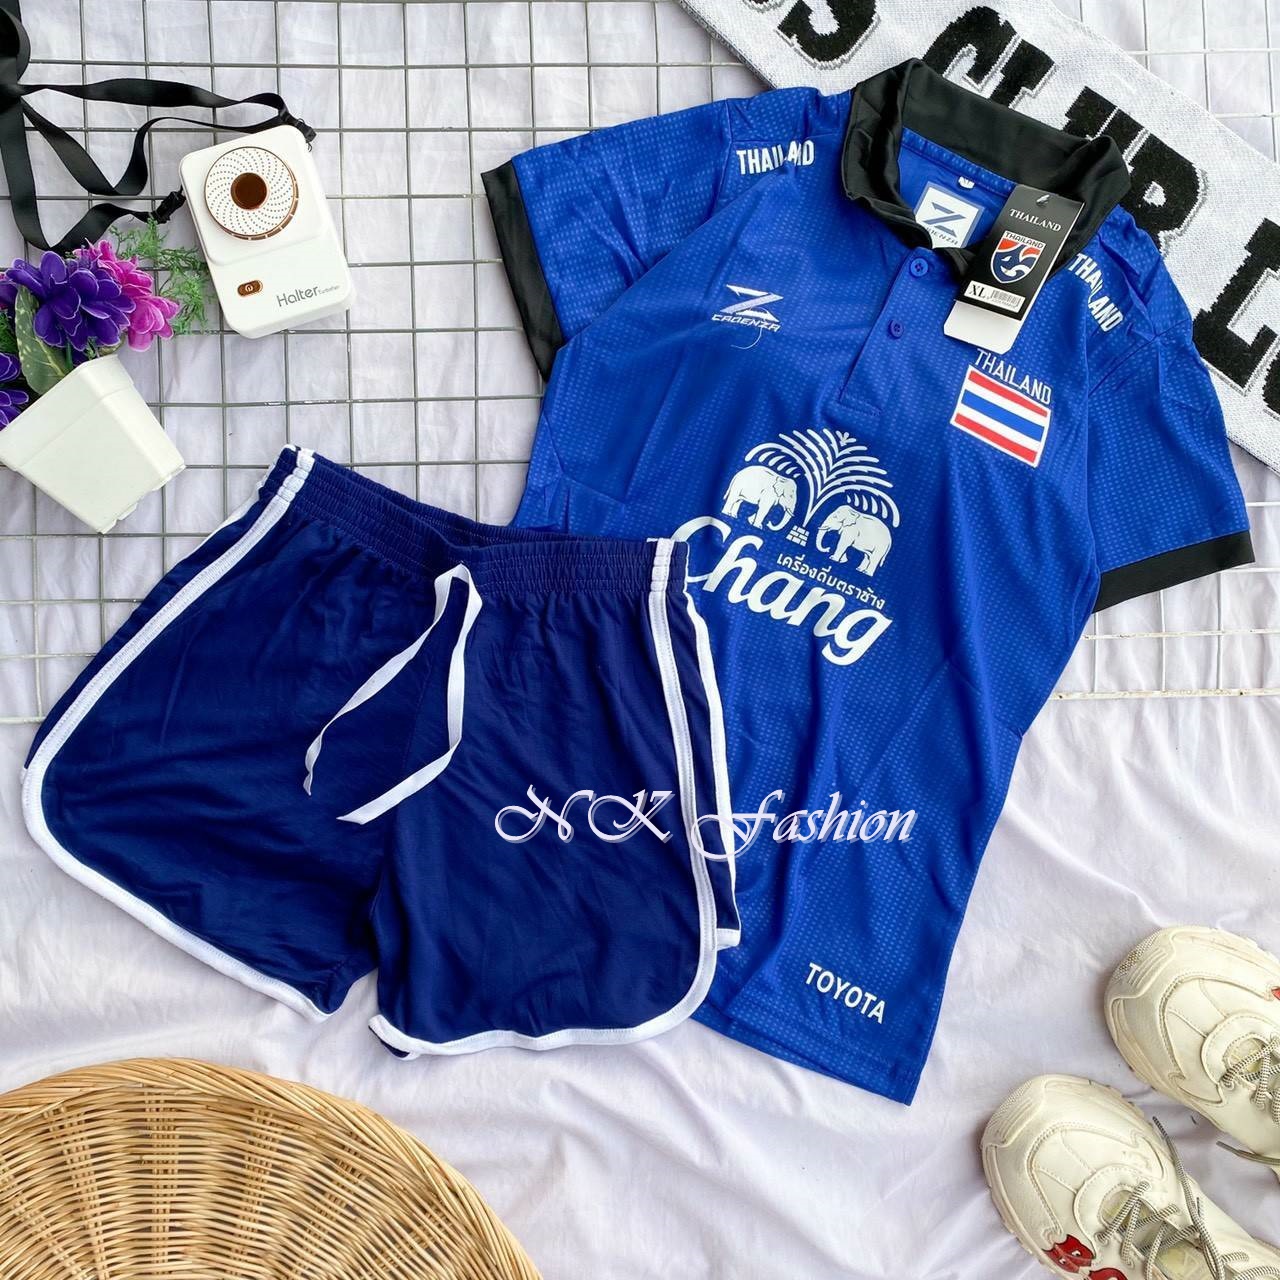 ์NEW‼️ เสื้อบอลหญิง เสื้อกีฬาทีมชาติไทย ลายใหม่‼️ ชุดเซทเสื้อ+กางเกง อกไม่เกิน38ใส่ได้